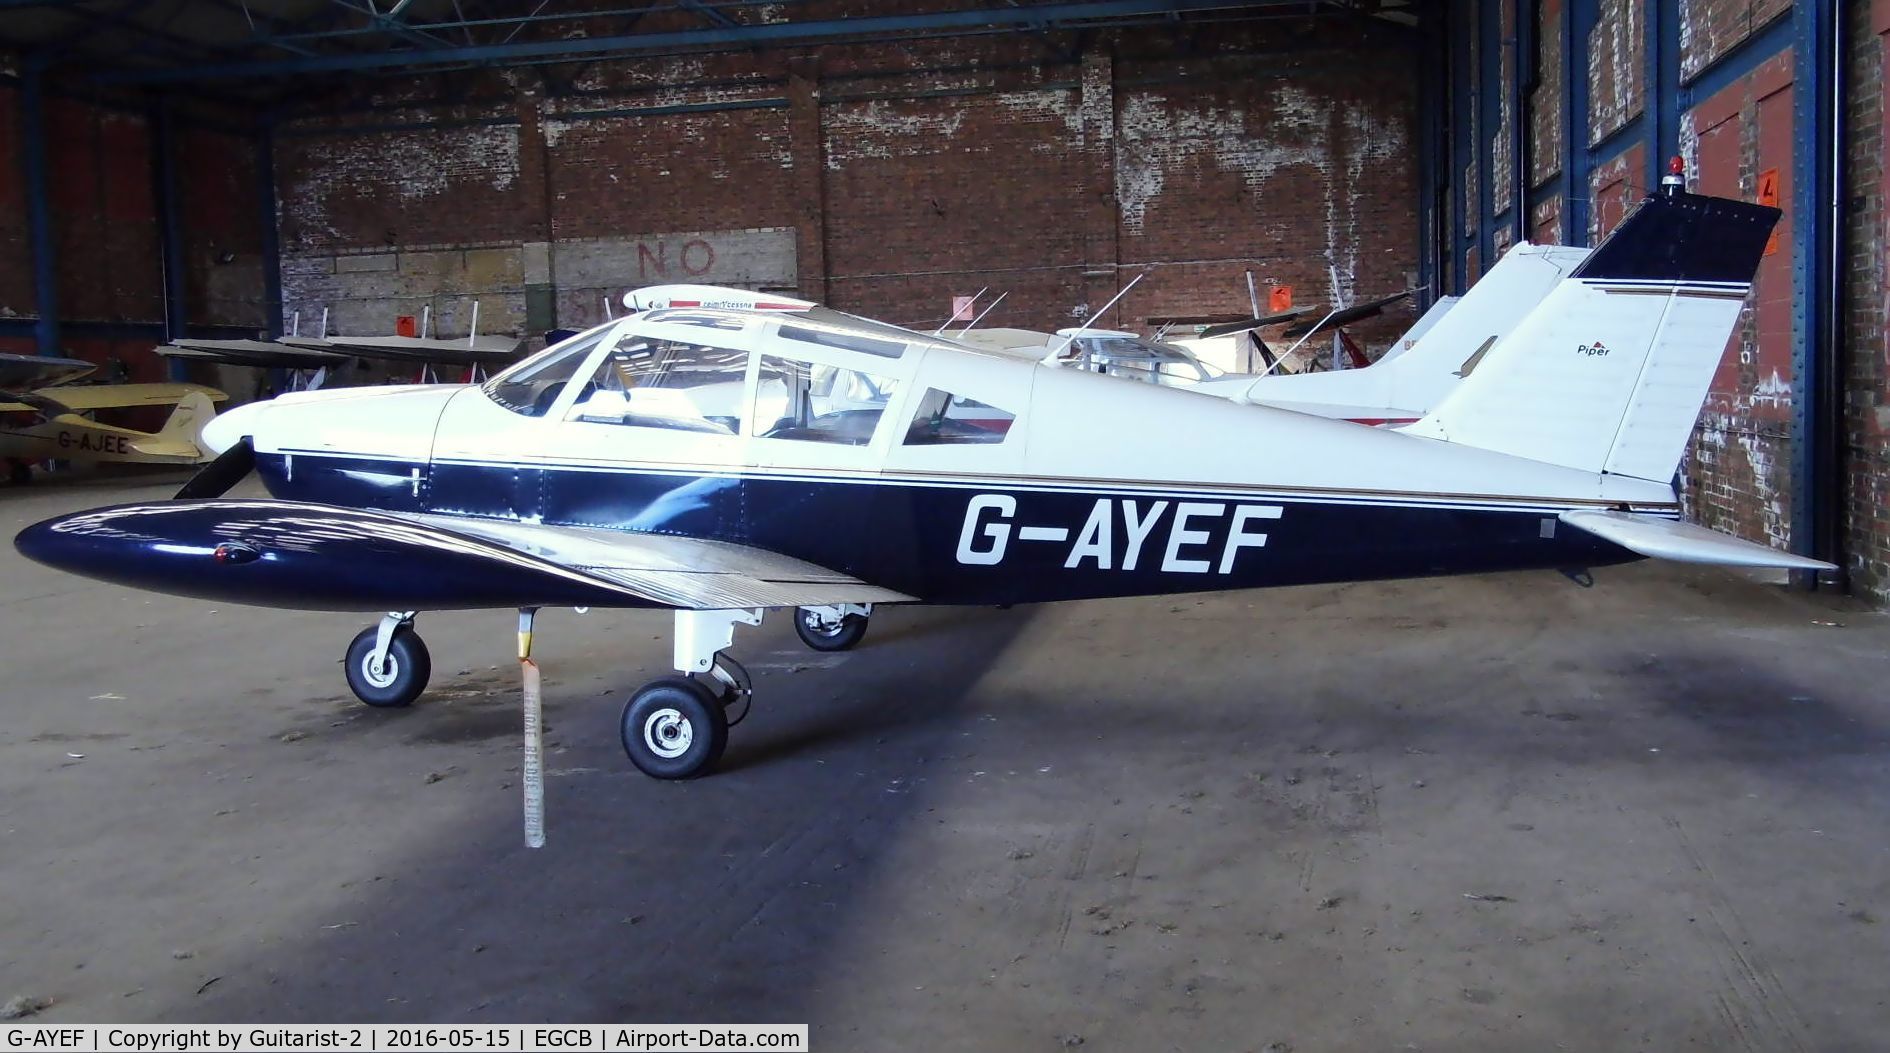 G-AYEF, 1970 Piper PA-28-180 Cherokee C/N 28-5815, At City Airport Manchester